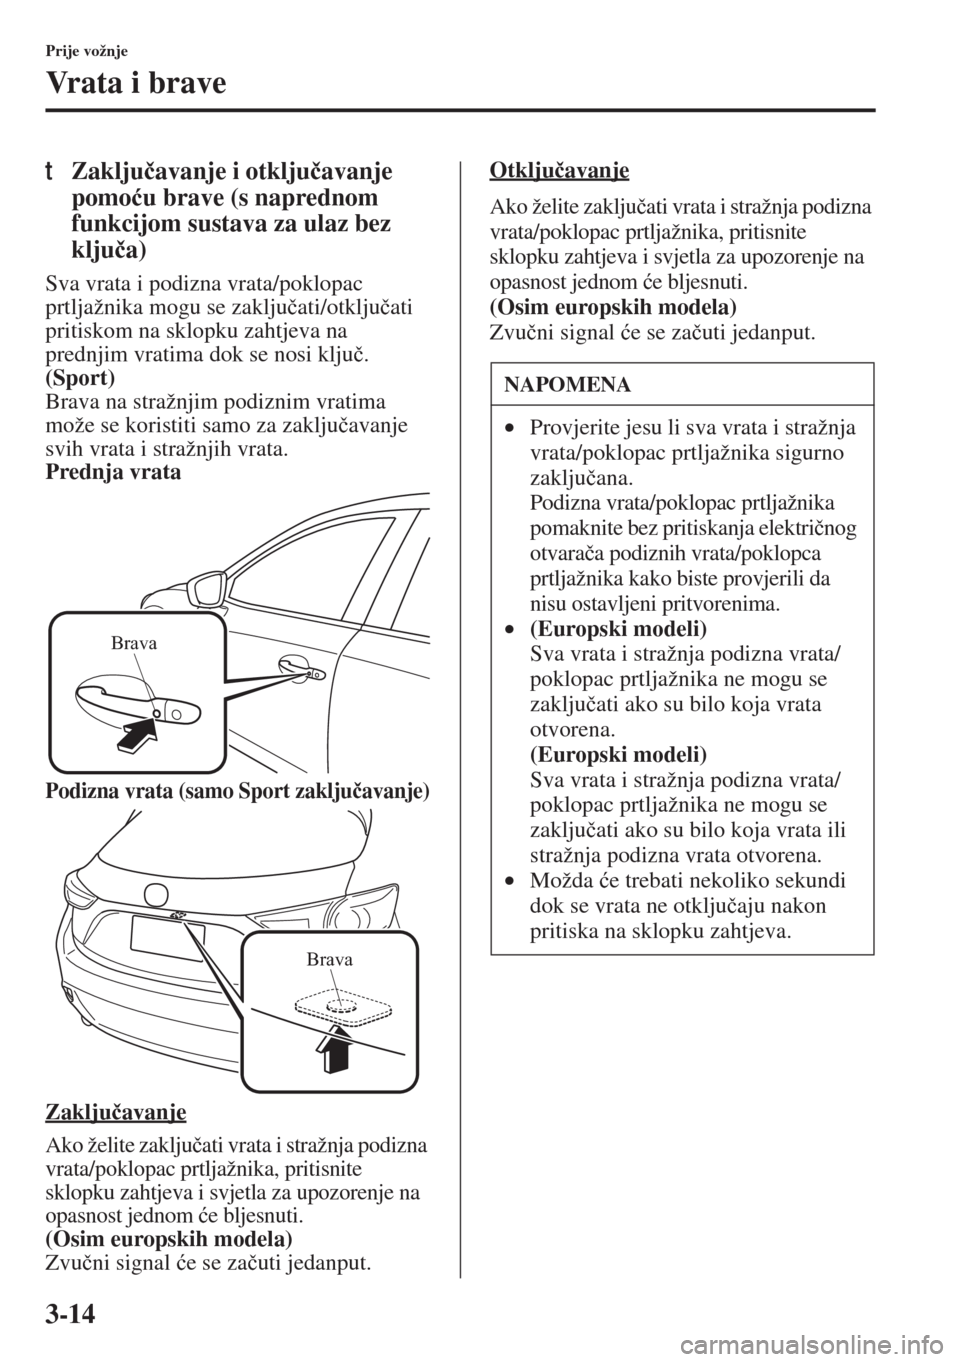 MAZDA MODEL 3 HATCHBACK 2015  Upute za uporabu (in Crotian) 3-14
Prije vožnje
Vrata i brave
tZaklju�þavanje i otklju�þavanje 
pomo�üu brave (s naprednom 
funkcijom sustava za ulaz bez 
klju�þa)
Sva vrata i podizna vrata/poklopac 
prtljažnika mogu se zakl